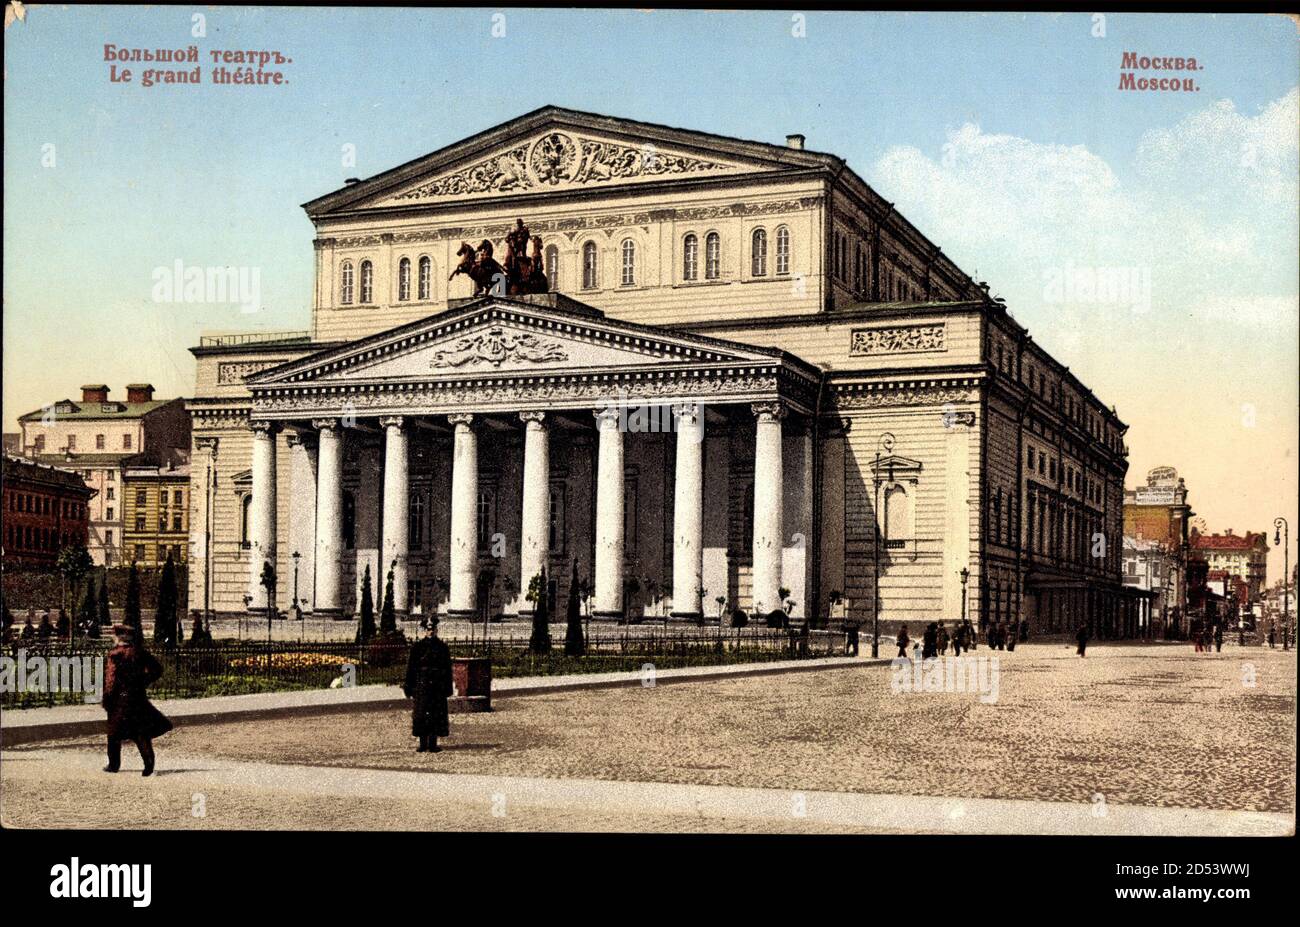 Moskau Russland, le Grand théatre, Großes Theatre | uso en todo el mundo Foto de stock